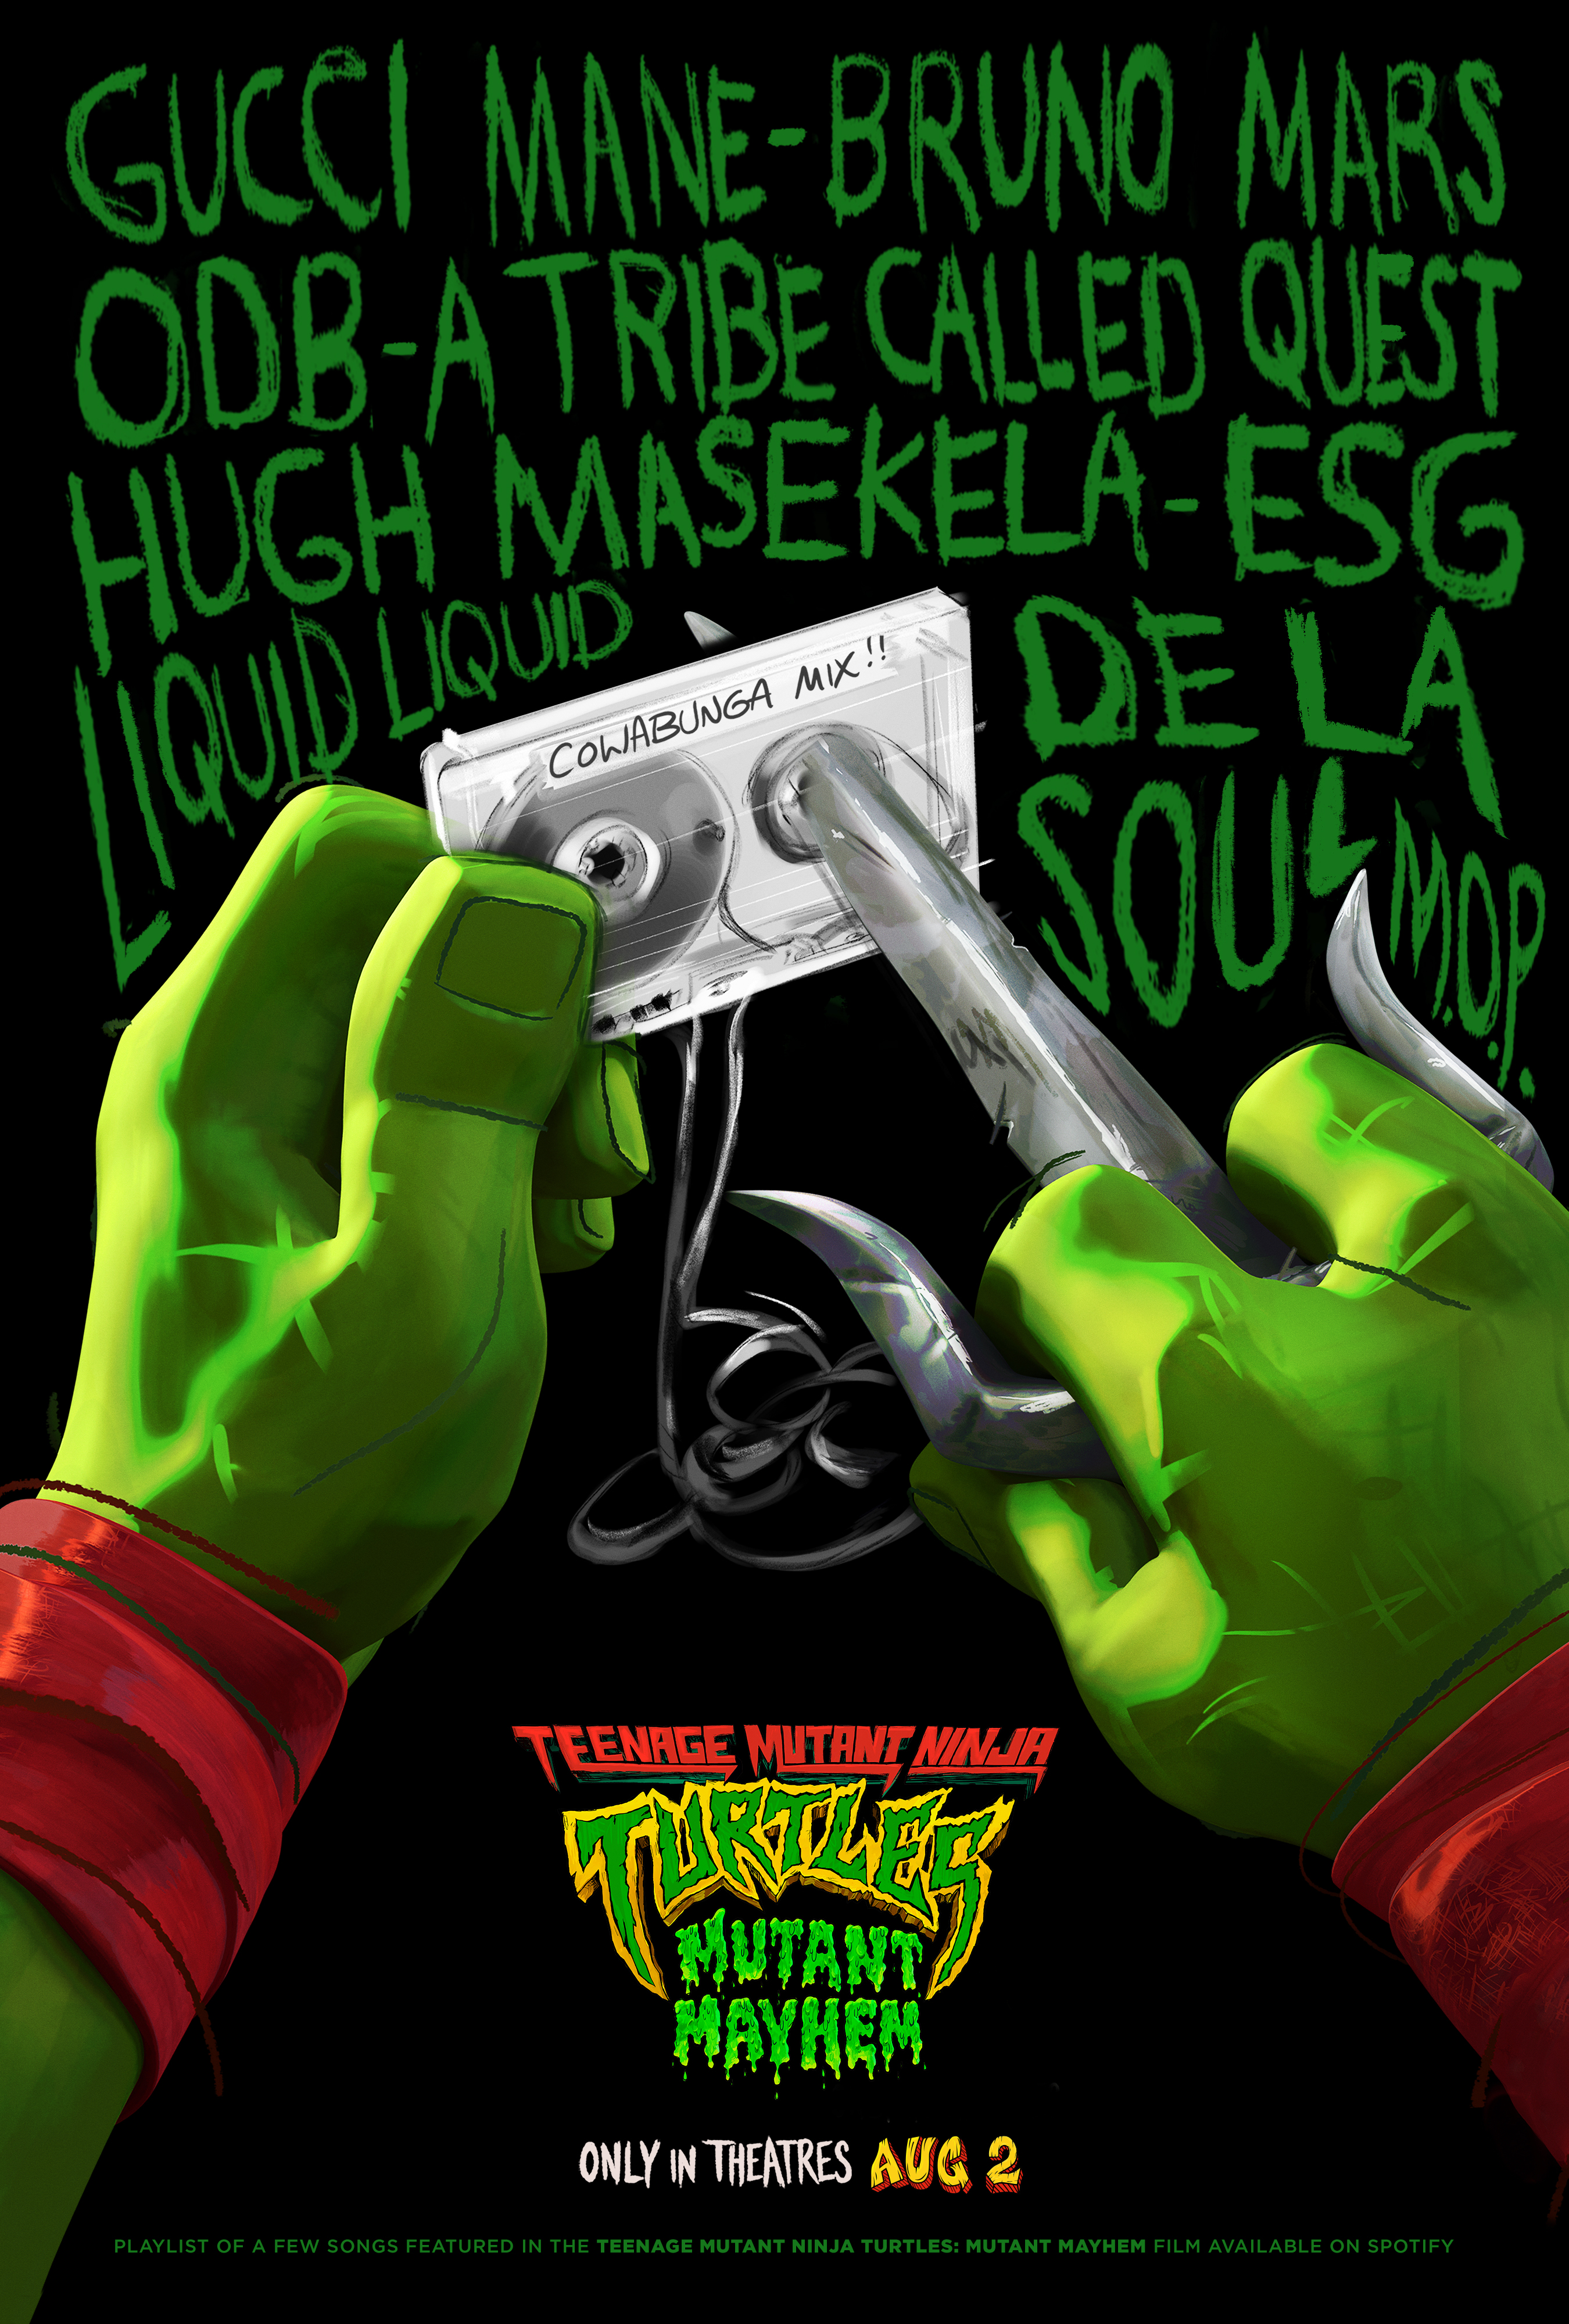 Teenage Mutant Ninja Turtles Music Video